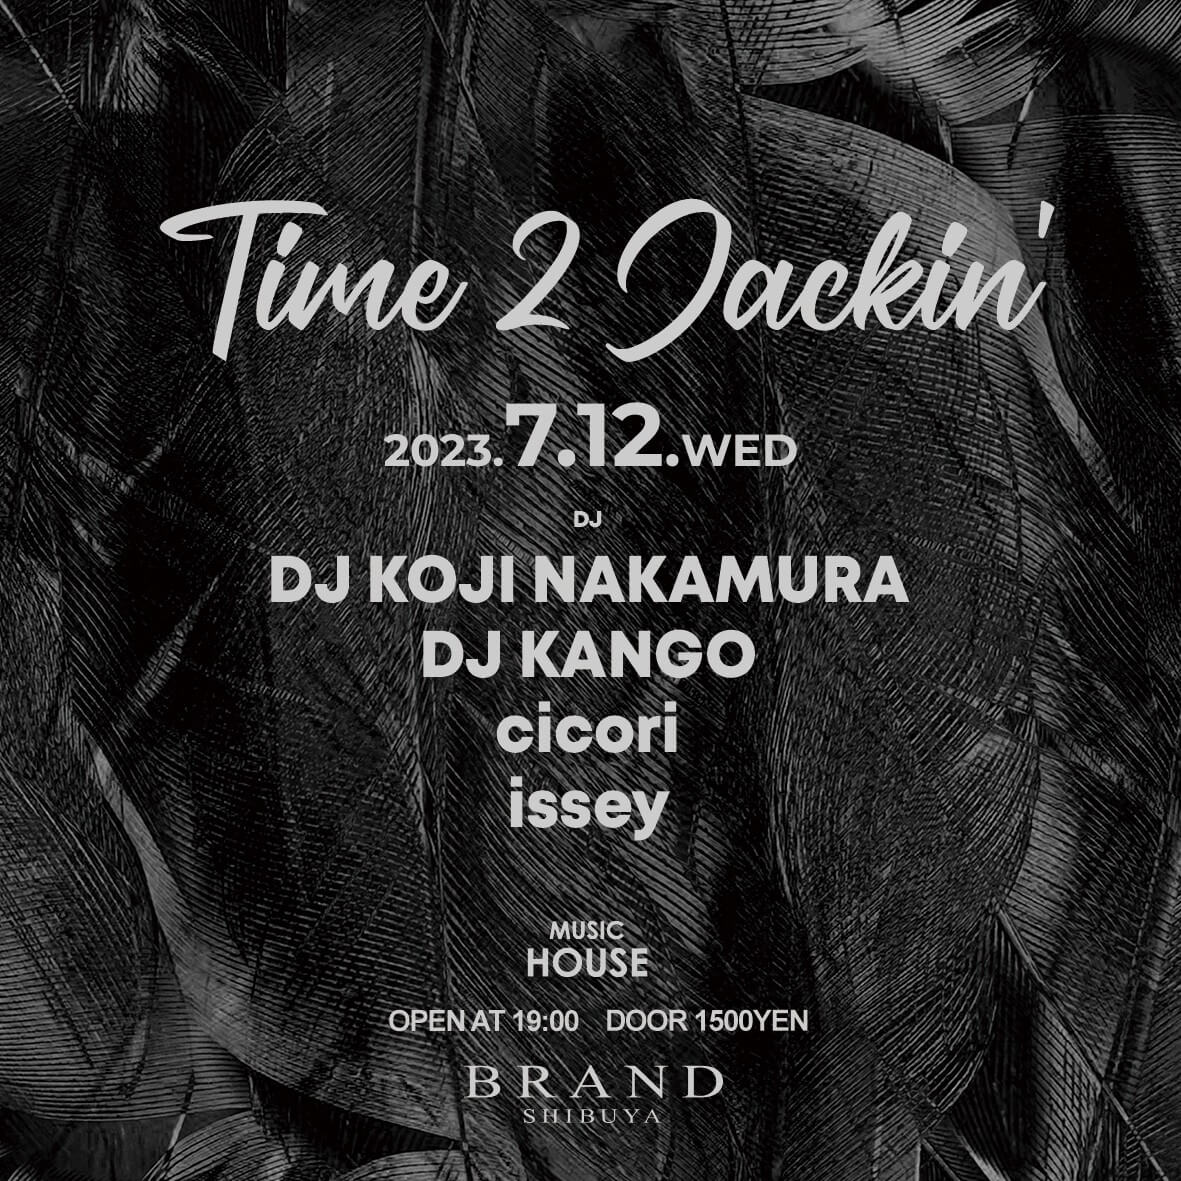 Time 2 Jackin 2023年07月12日（水曜日）に渋谷 クラブのBRAND SHIBUYAで開催されるHOUSEイベント